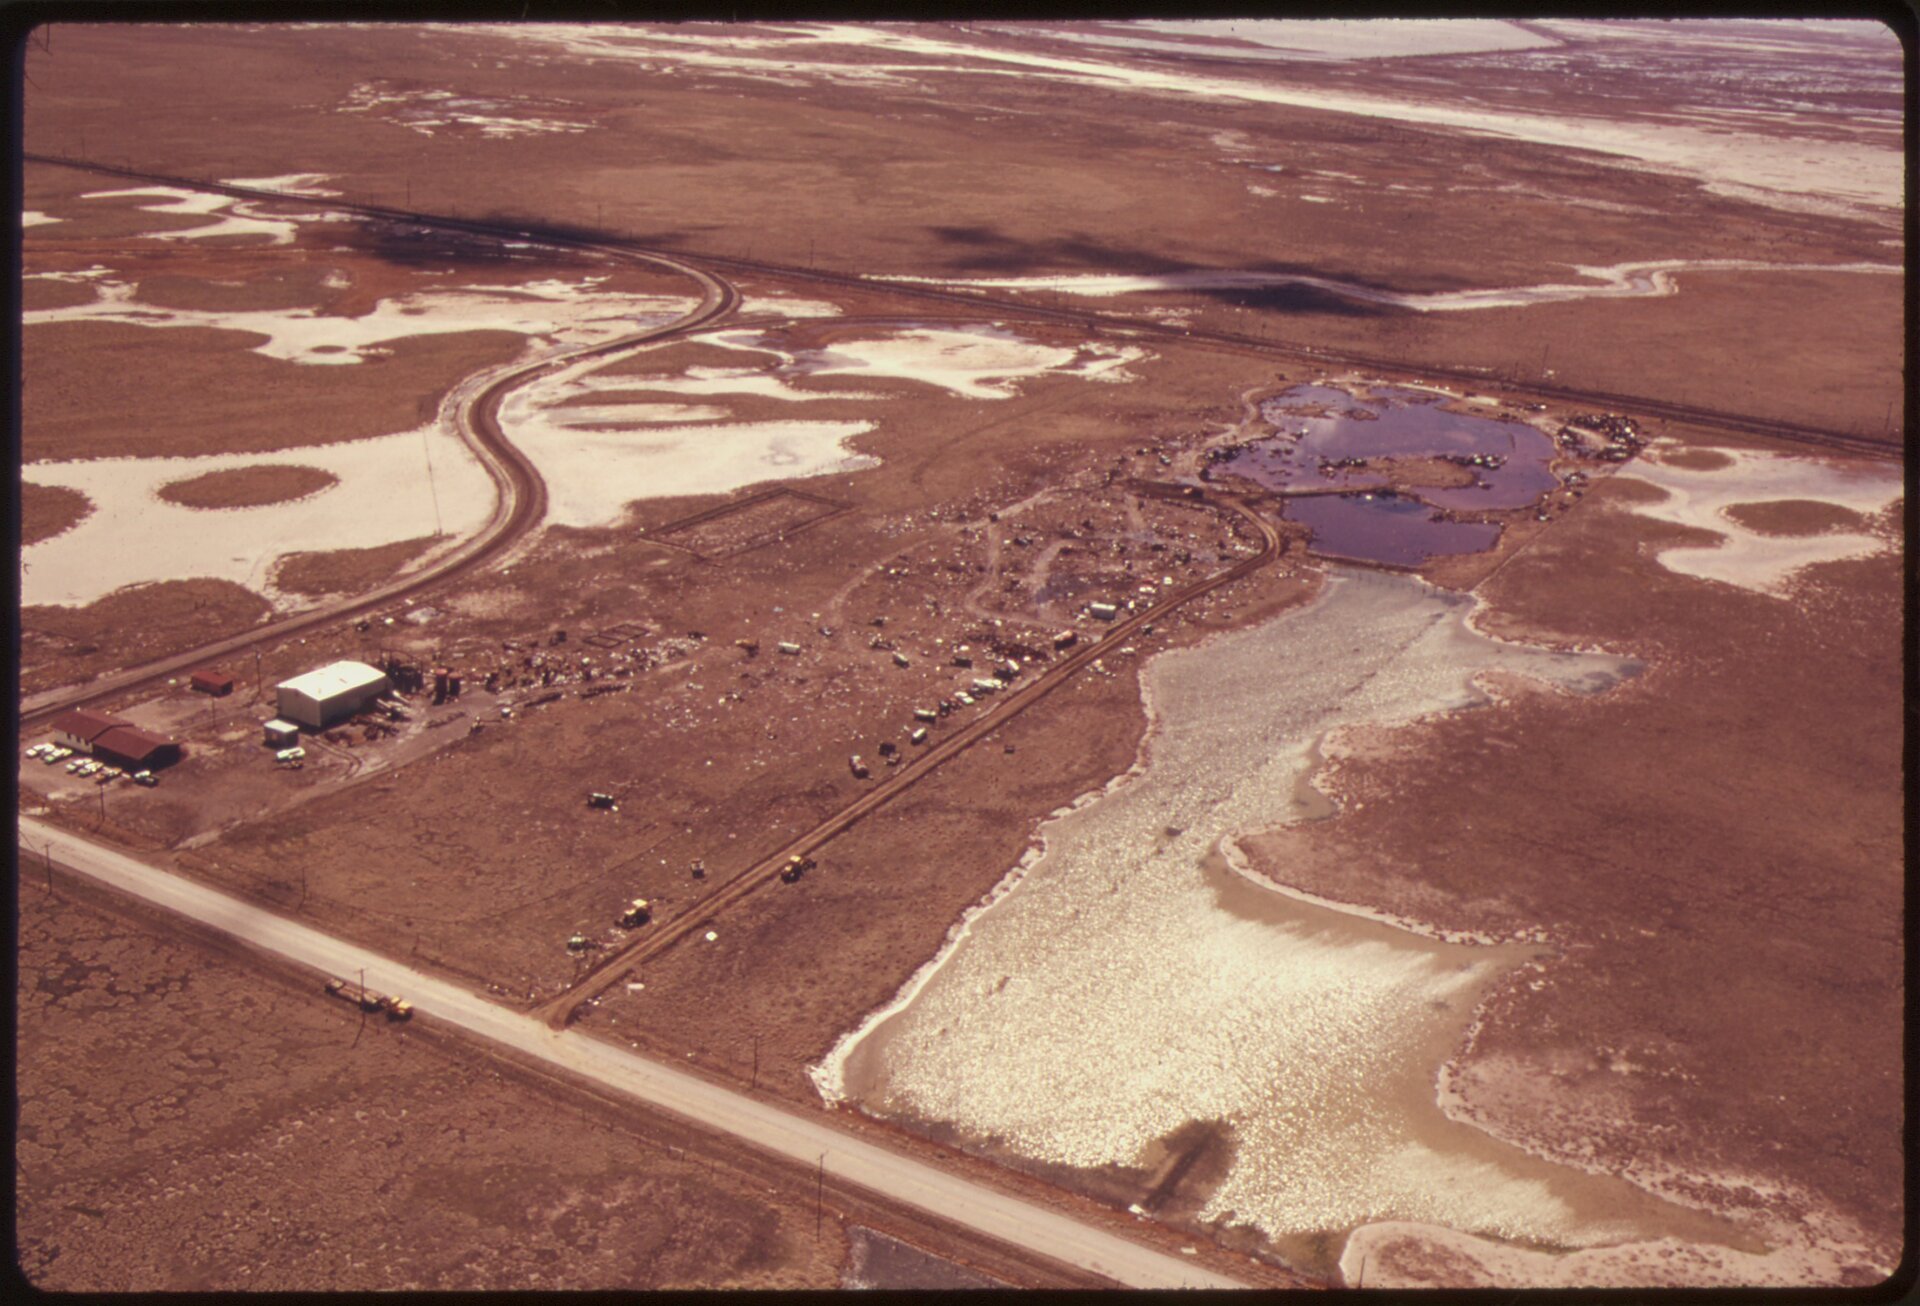 Zdjęcie wykonane z lotu ptaka przedstawia płaski teren. Ziemia ma kolor brązowoczerwony. W niektórych miejscach stoi woda. Widać trzy nieliczne budynki oraz wąską drogę. Poza tym teren jest opustoszały. 